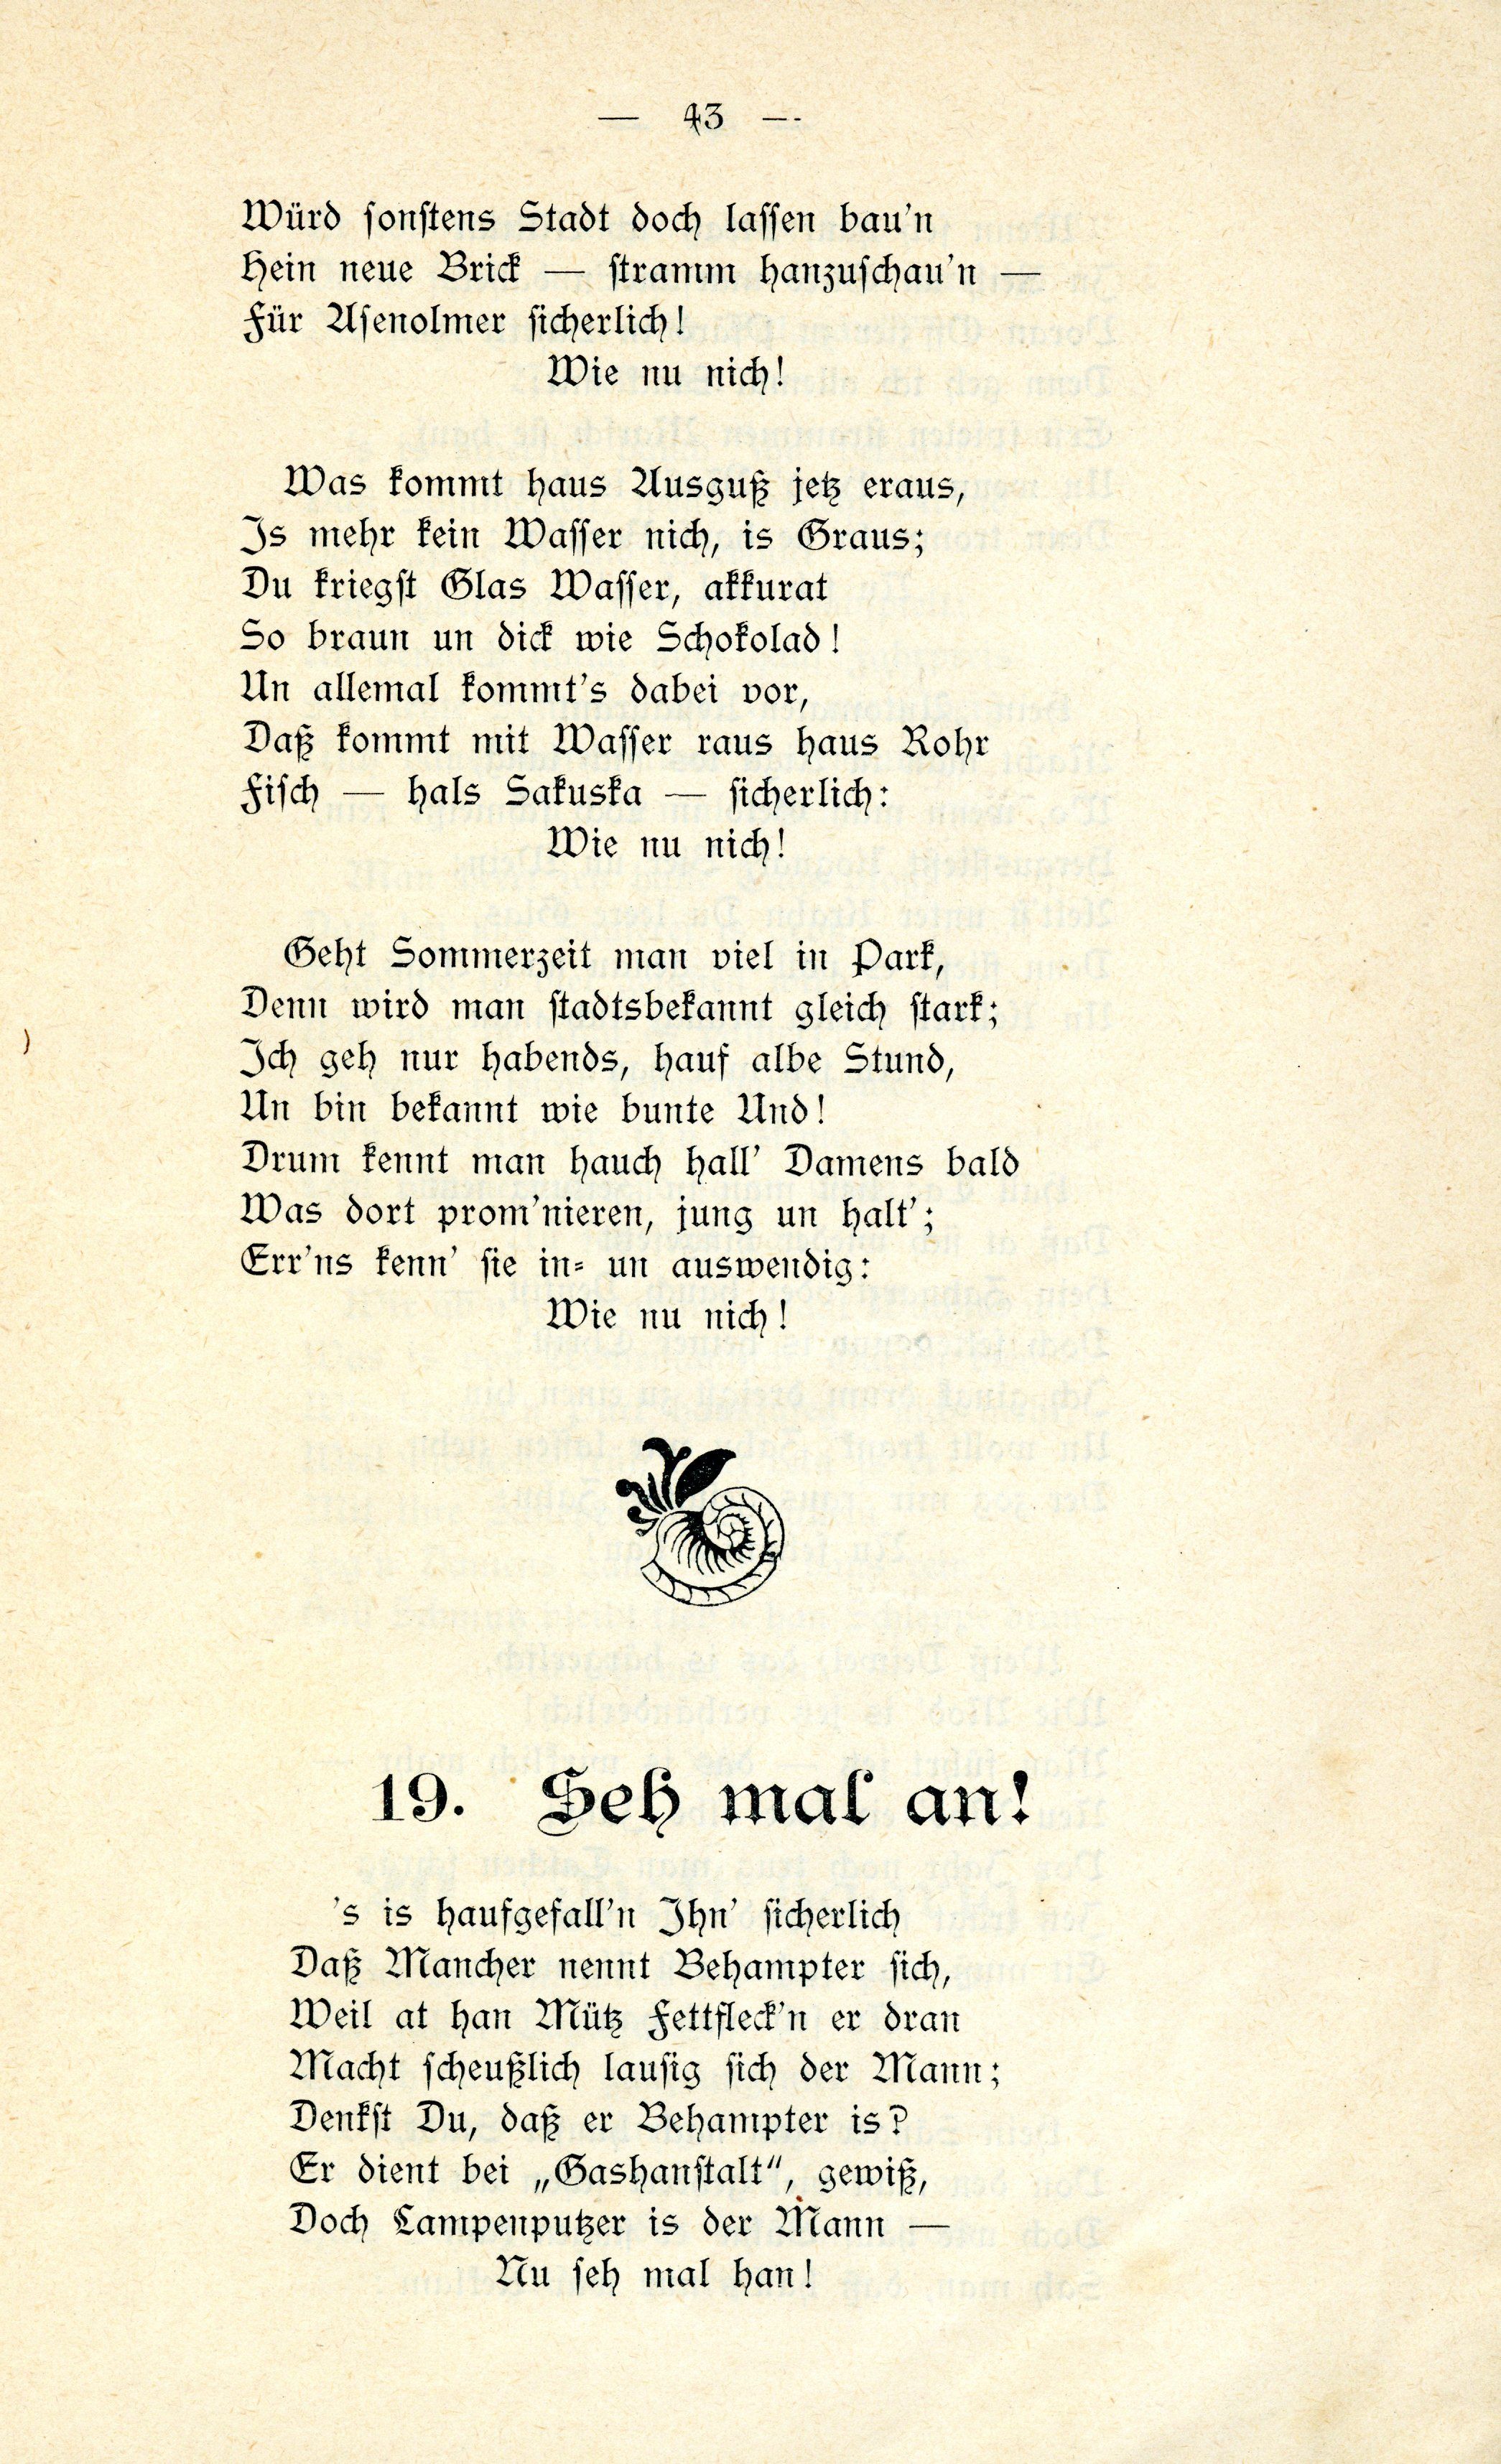 Schanno von Dünakant (1903) | 44. (43) Main body of text